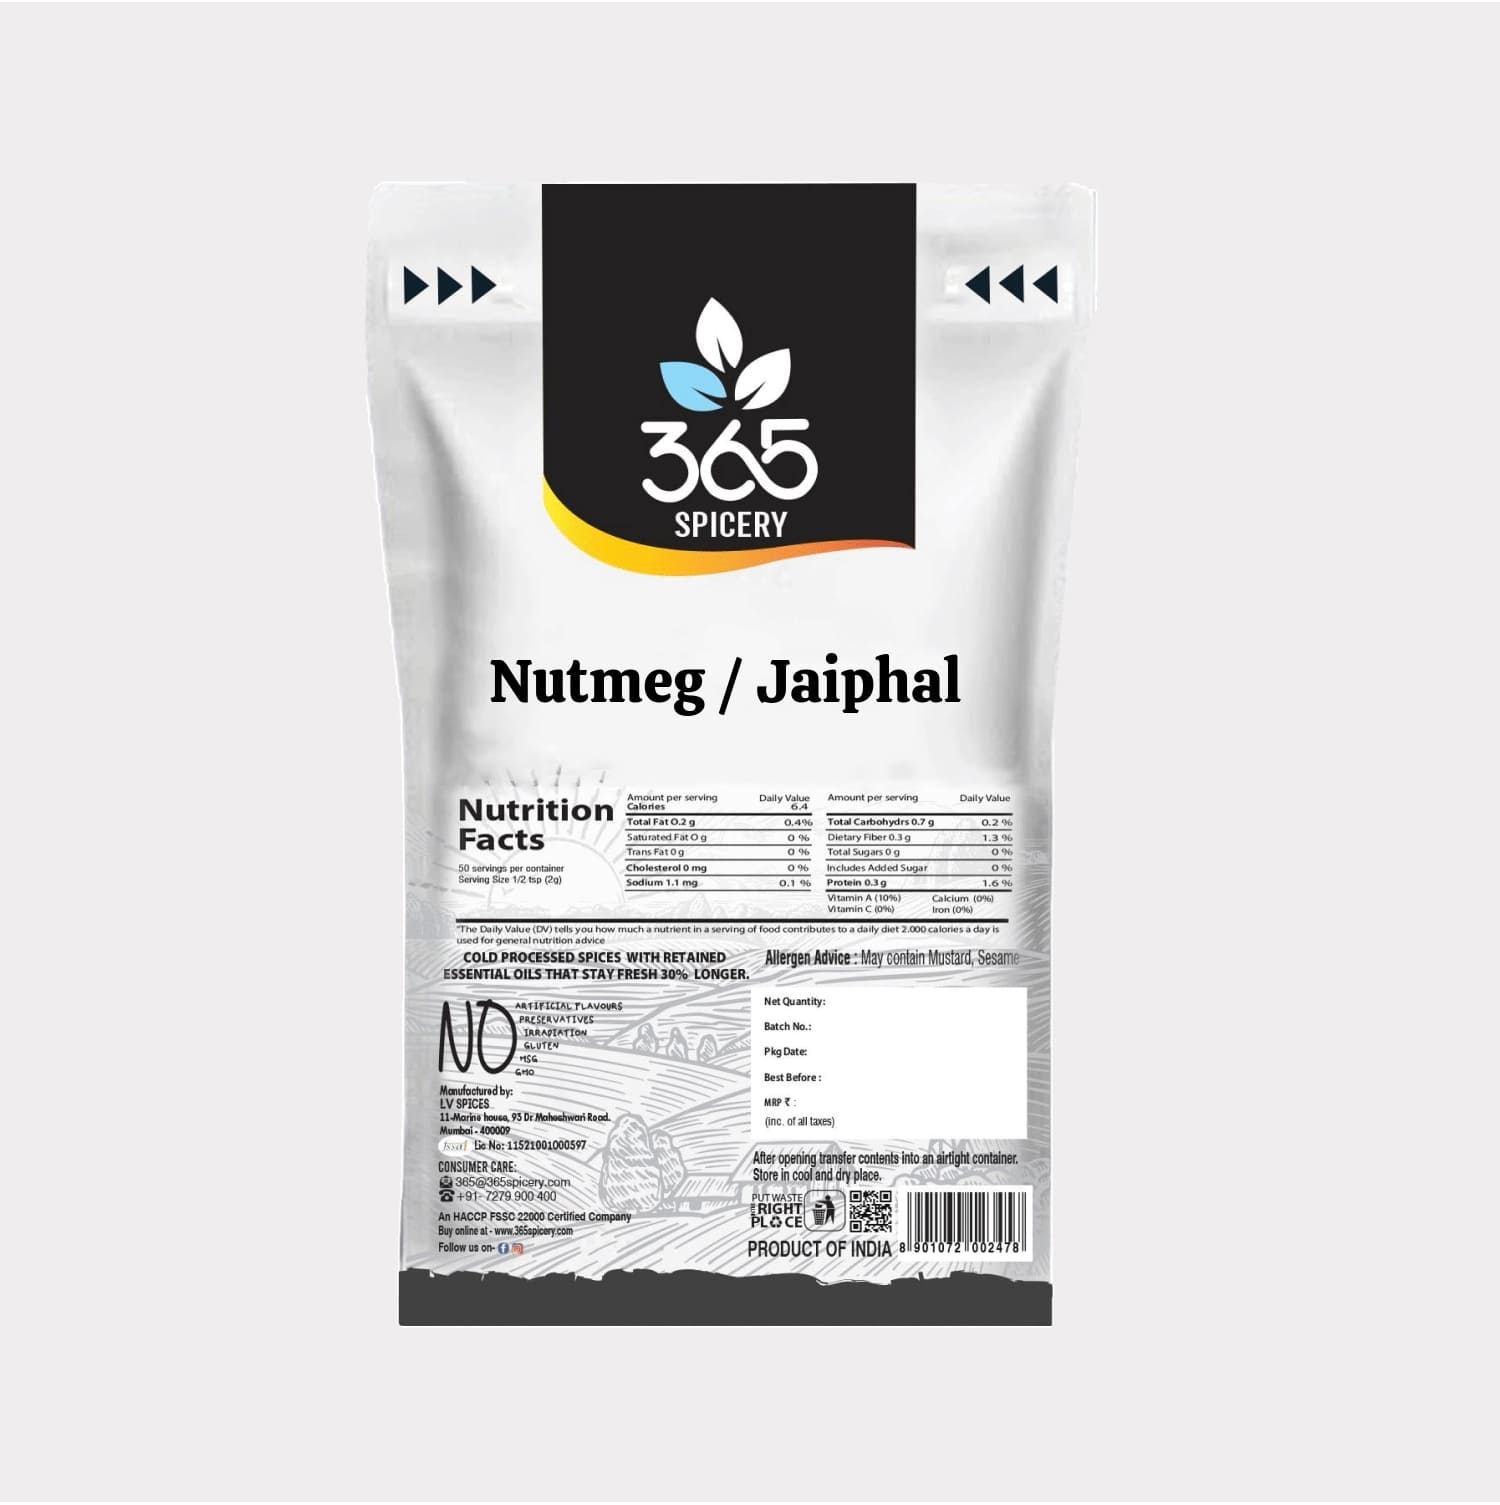 Nutmeg / Jaiphal